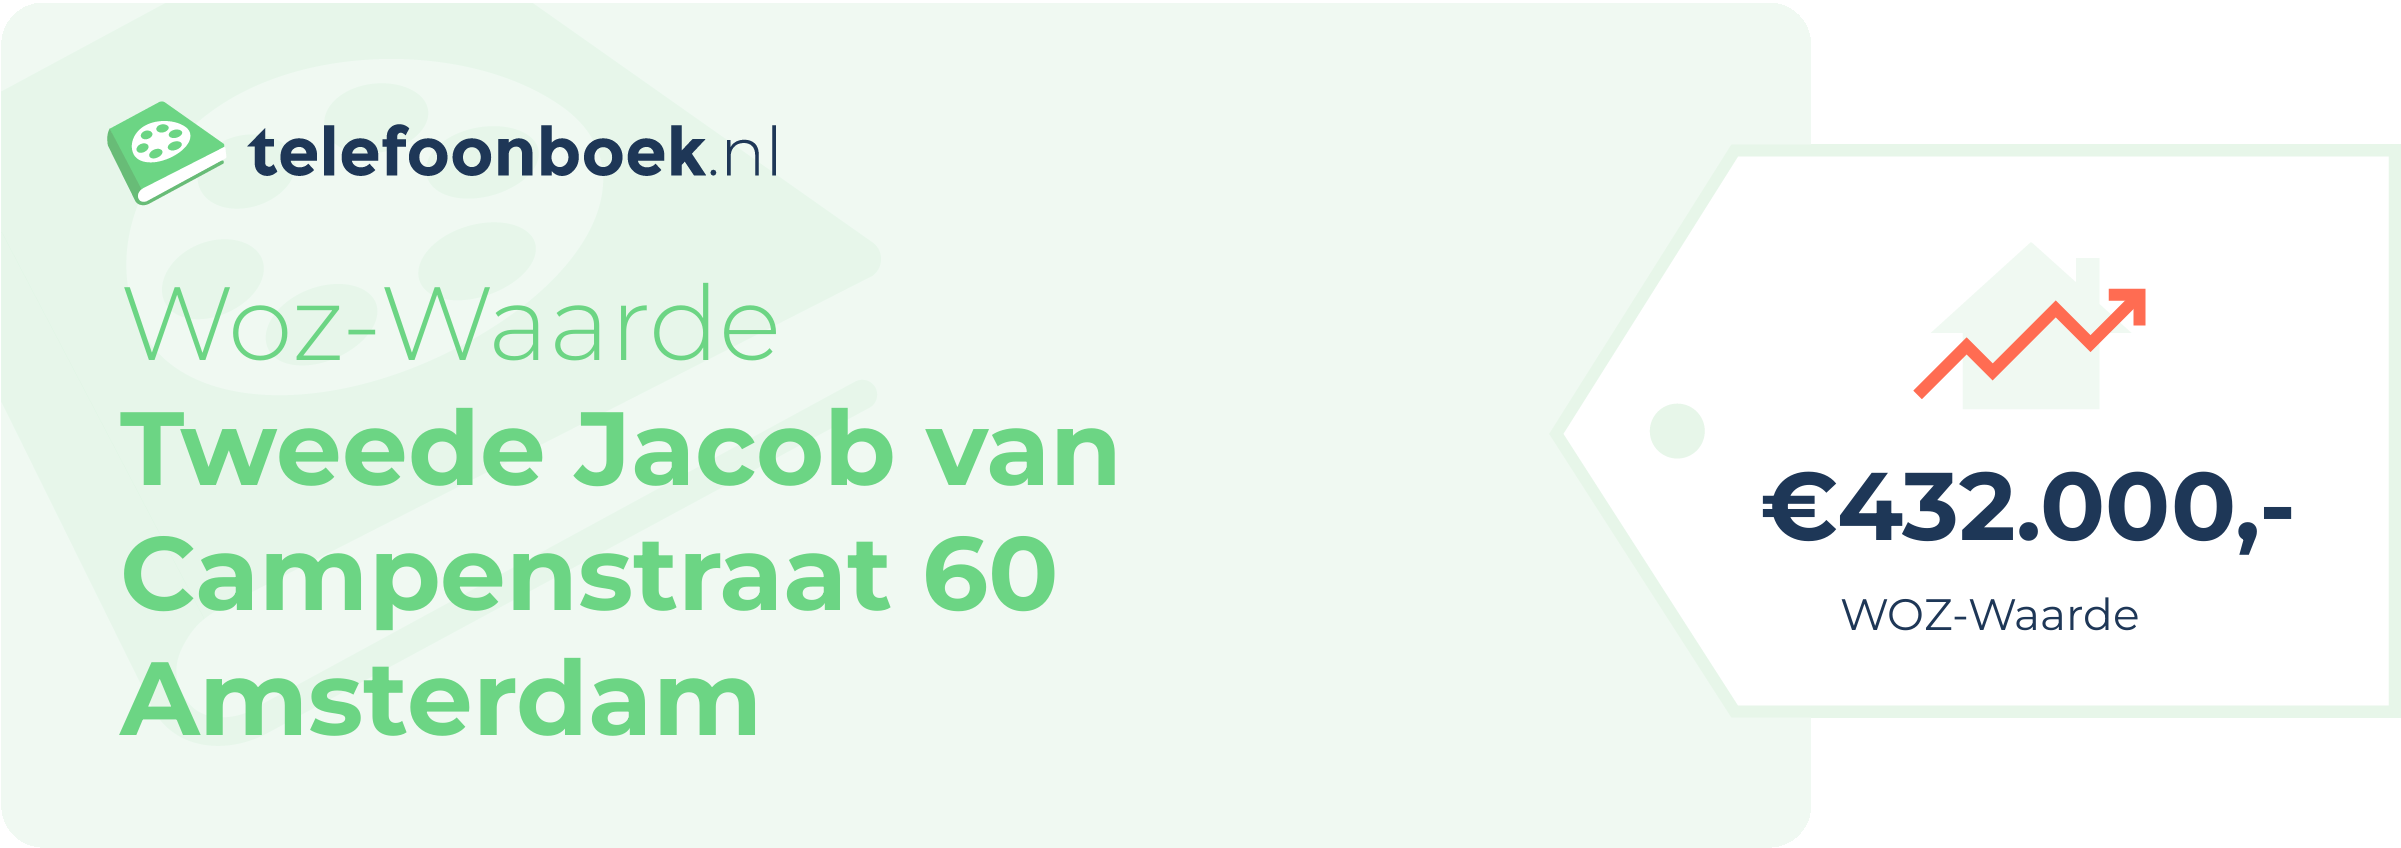 WOZ-waarde Tweede Jacob Van Campenstraat 60 Amsterdam